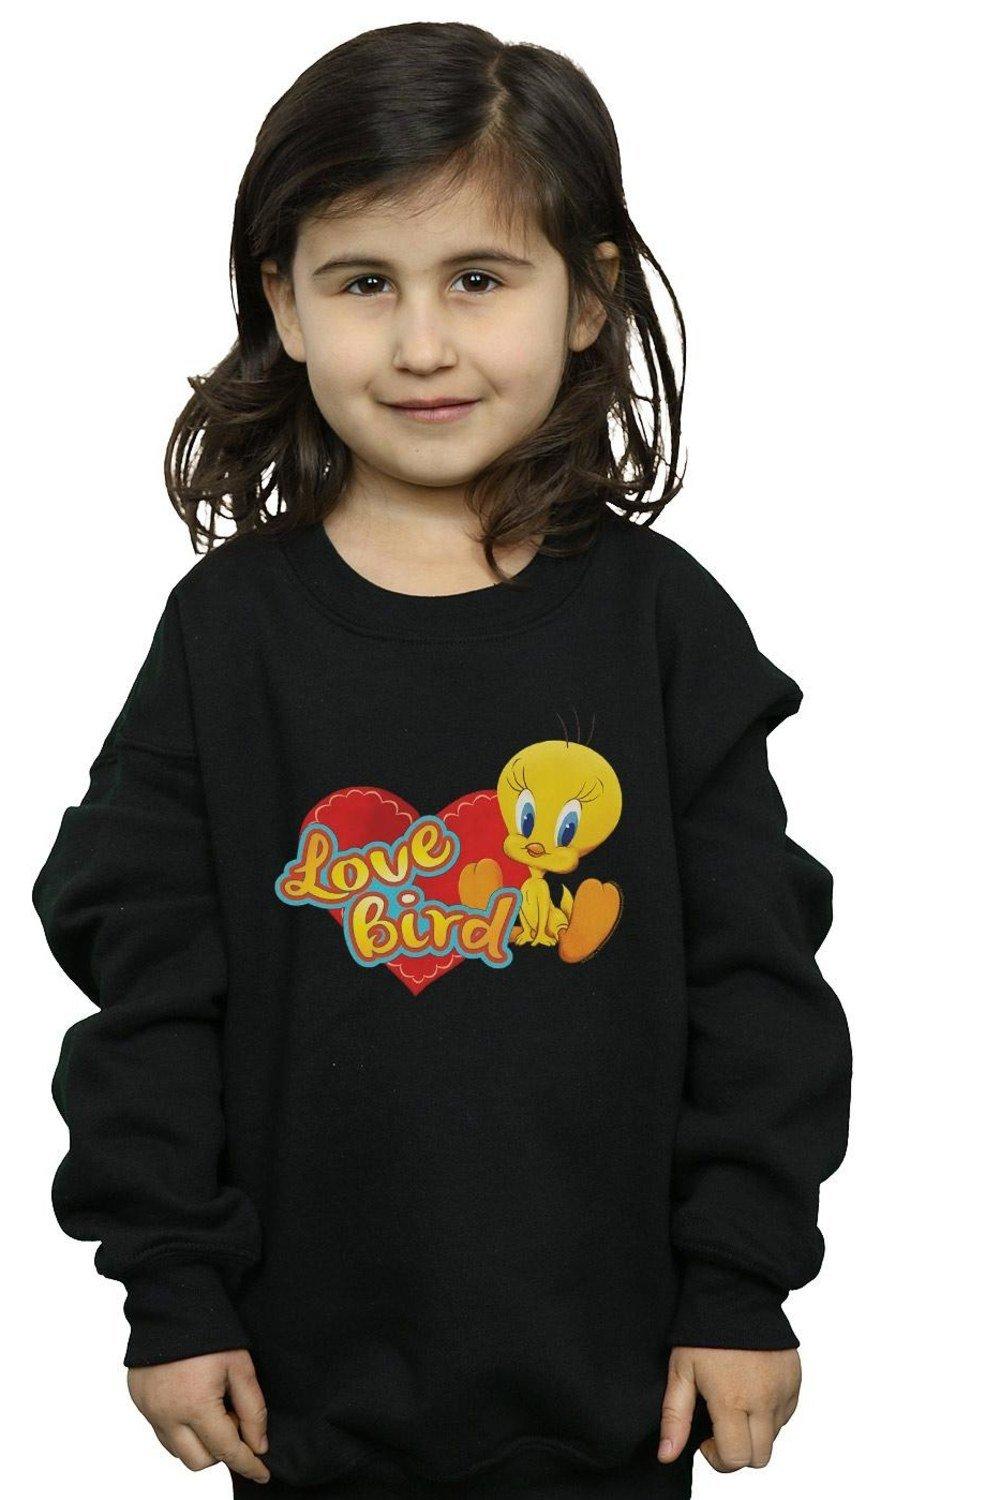 Tweety Pie Valentine’s Day Love Bird Sweatshirt